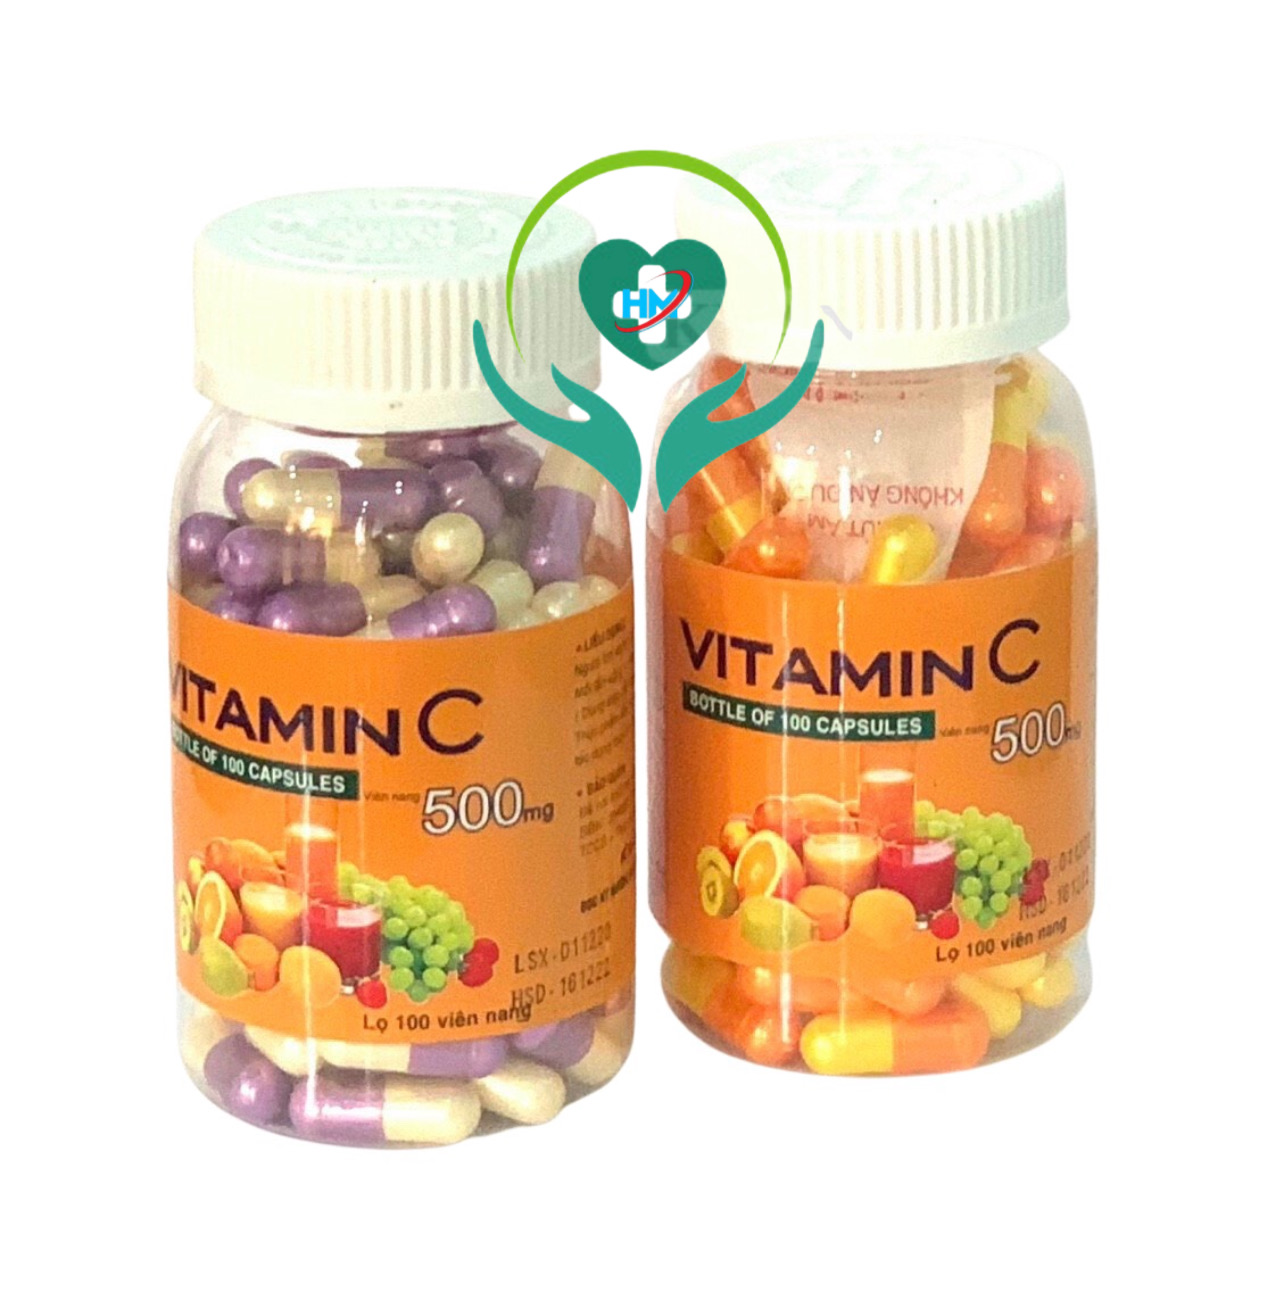 Vitamin C ( dạng viên nang) Vinapharco, lọ 100v, tăng cường sức đề kháng, làm bền mạch máu